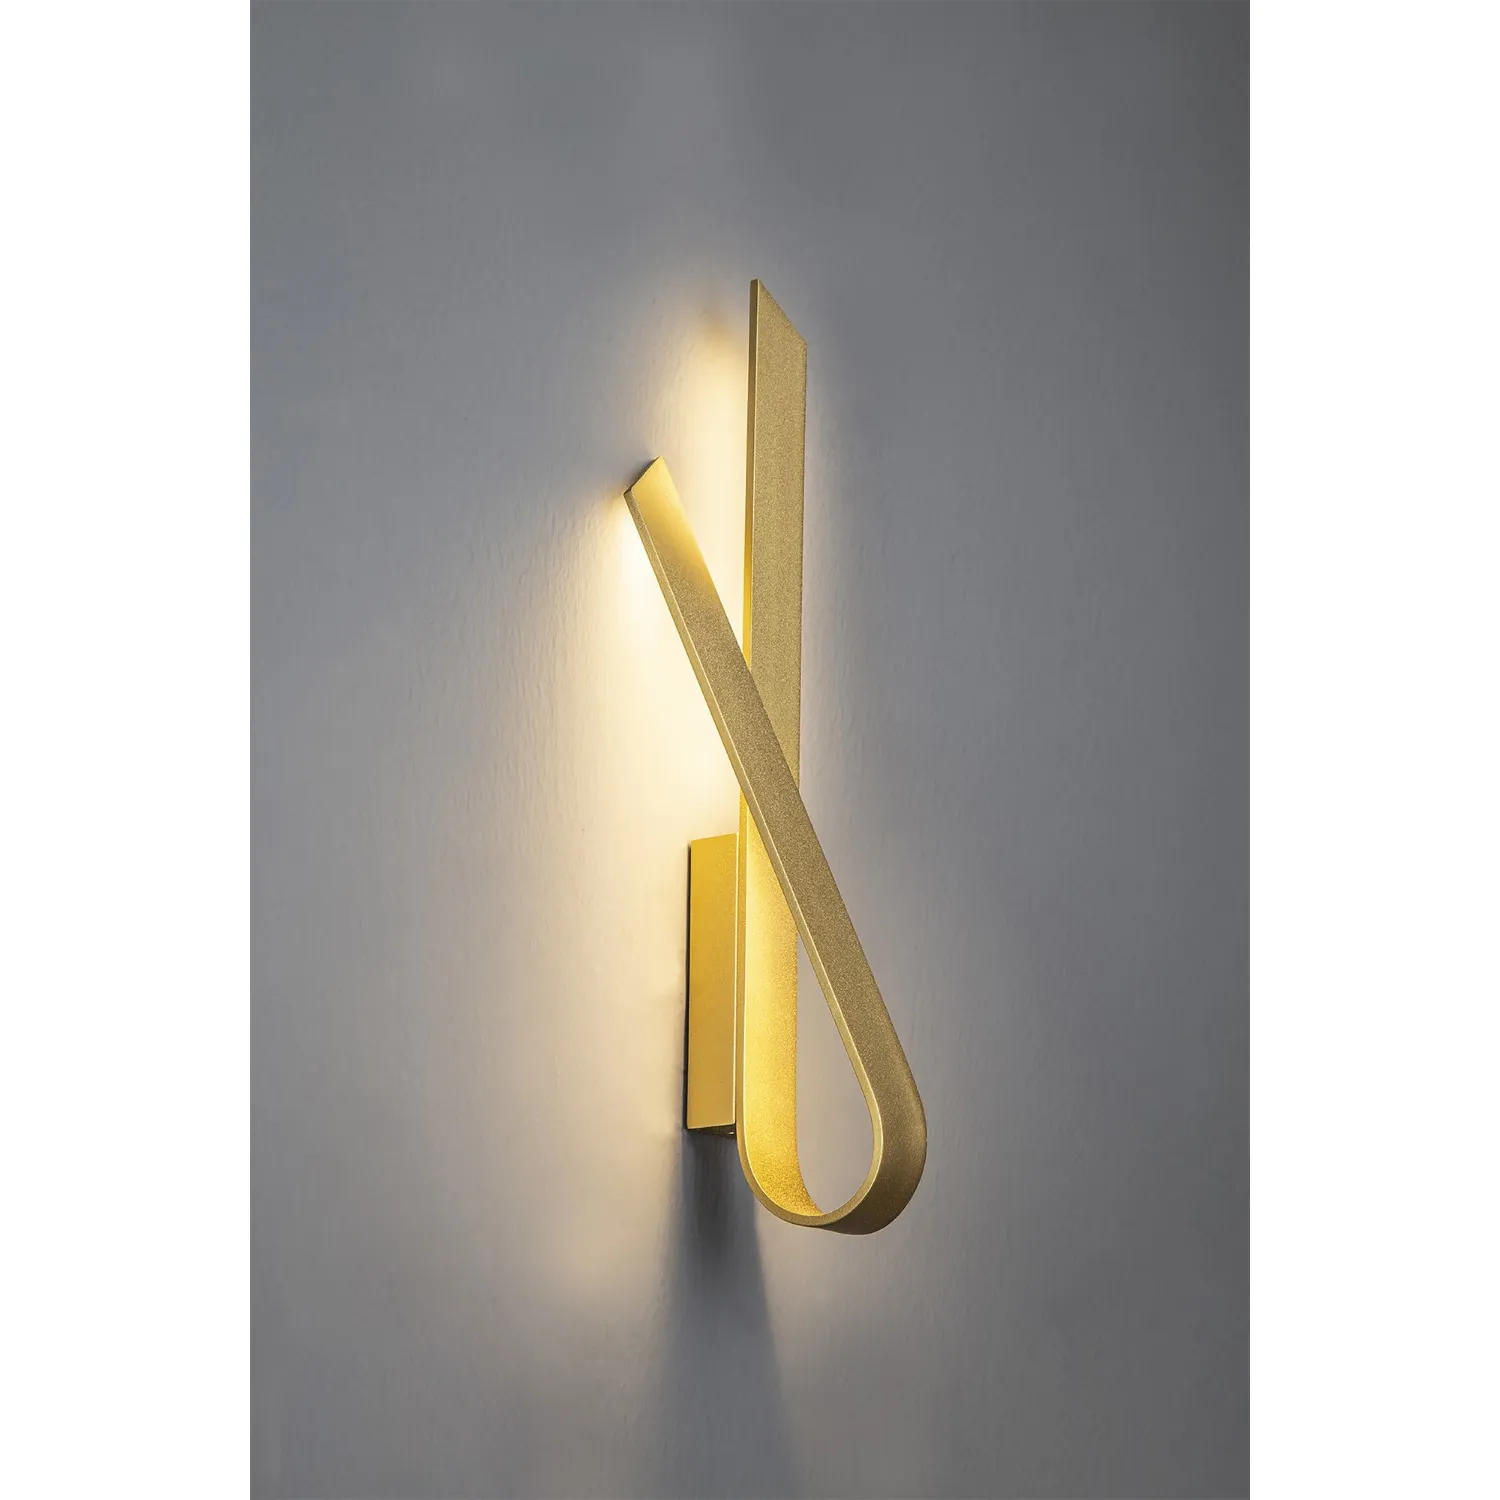 Feltham Wall Lamp, 1 x 12W LED, 3000K, 840lm, Sand Gold, 3yrs Warranty